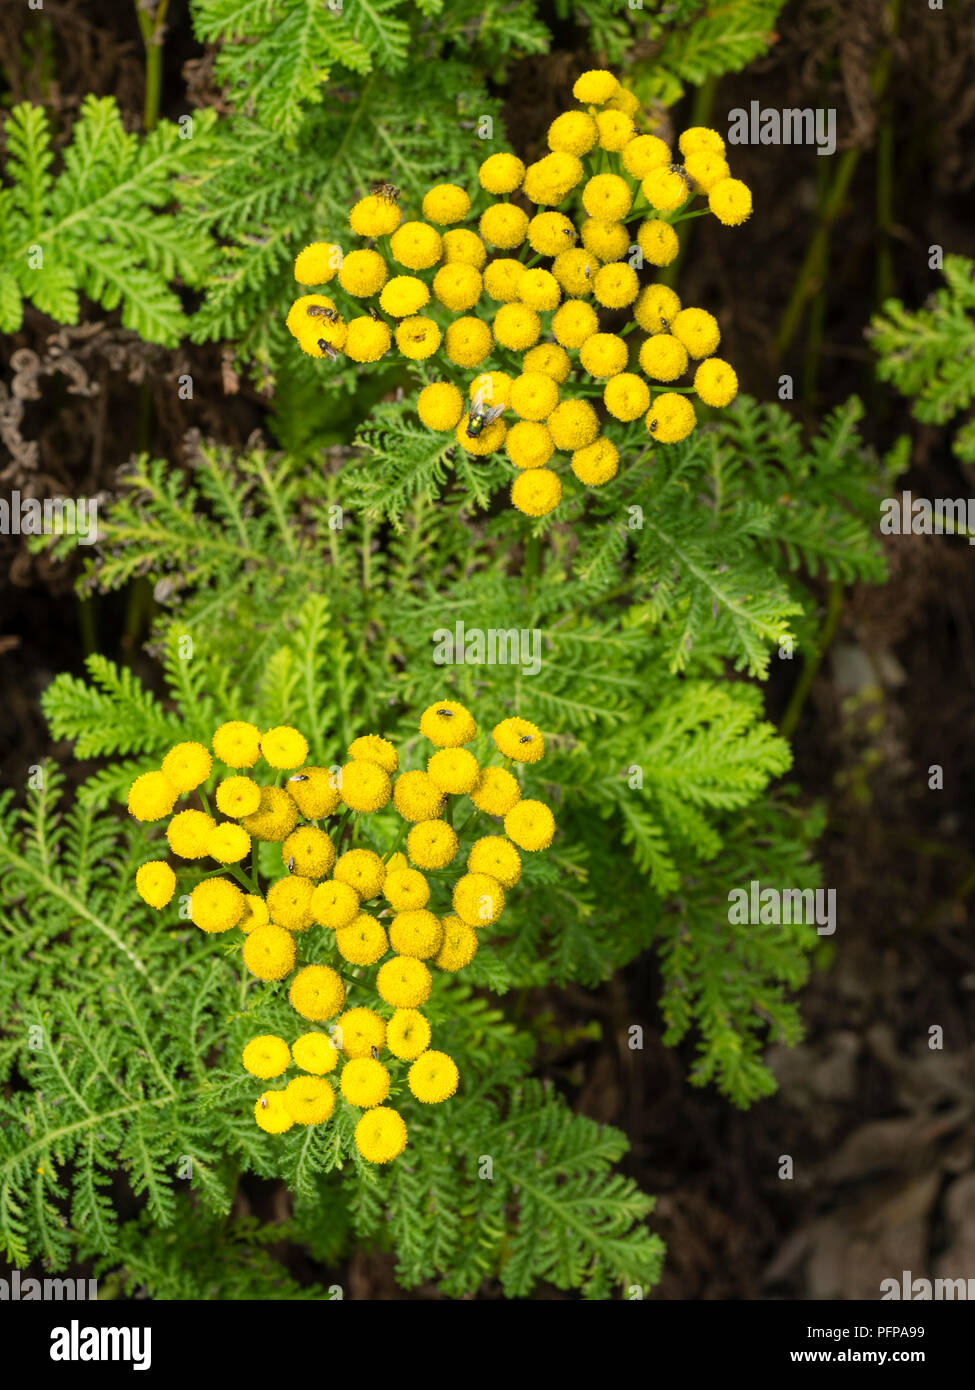 Botón amarillo de flores y follaje de tansy ferny, Tanacetum vulgare, una hierba medicinal que es tóxico en grandes cantidades Foto de stock